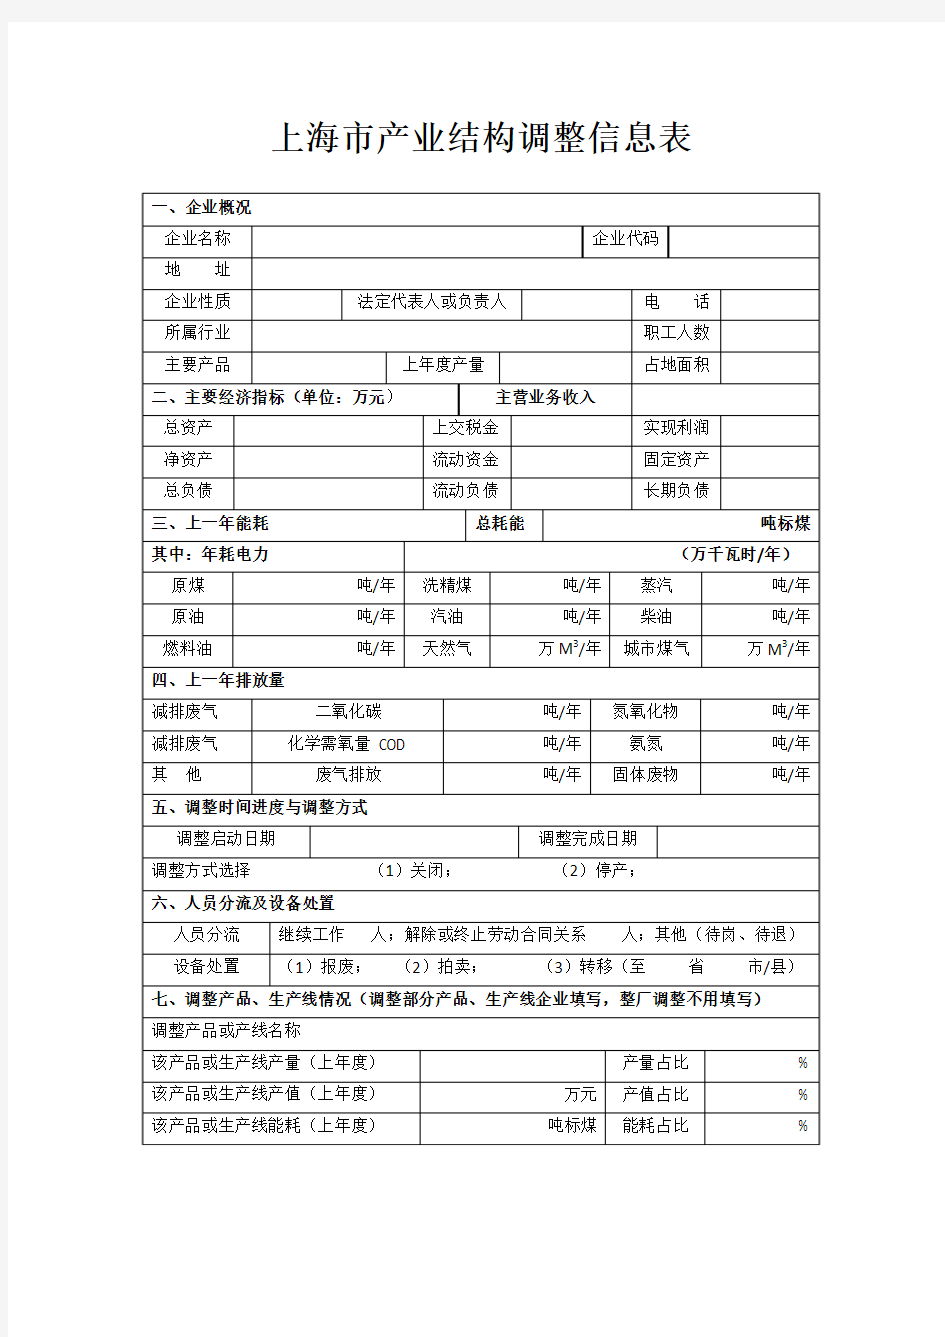 上海市产业结构调整信息表